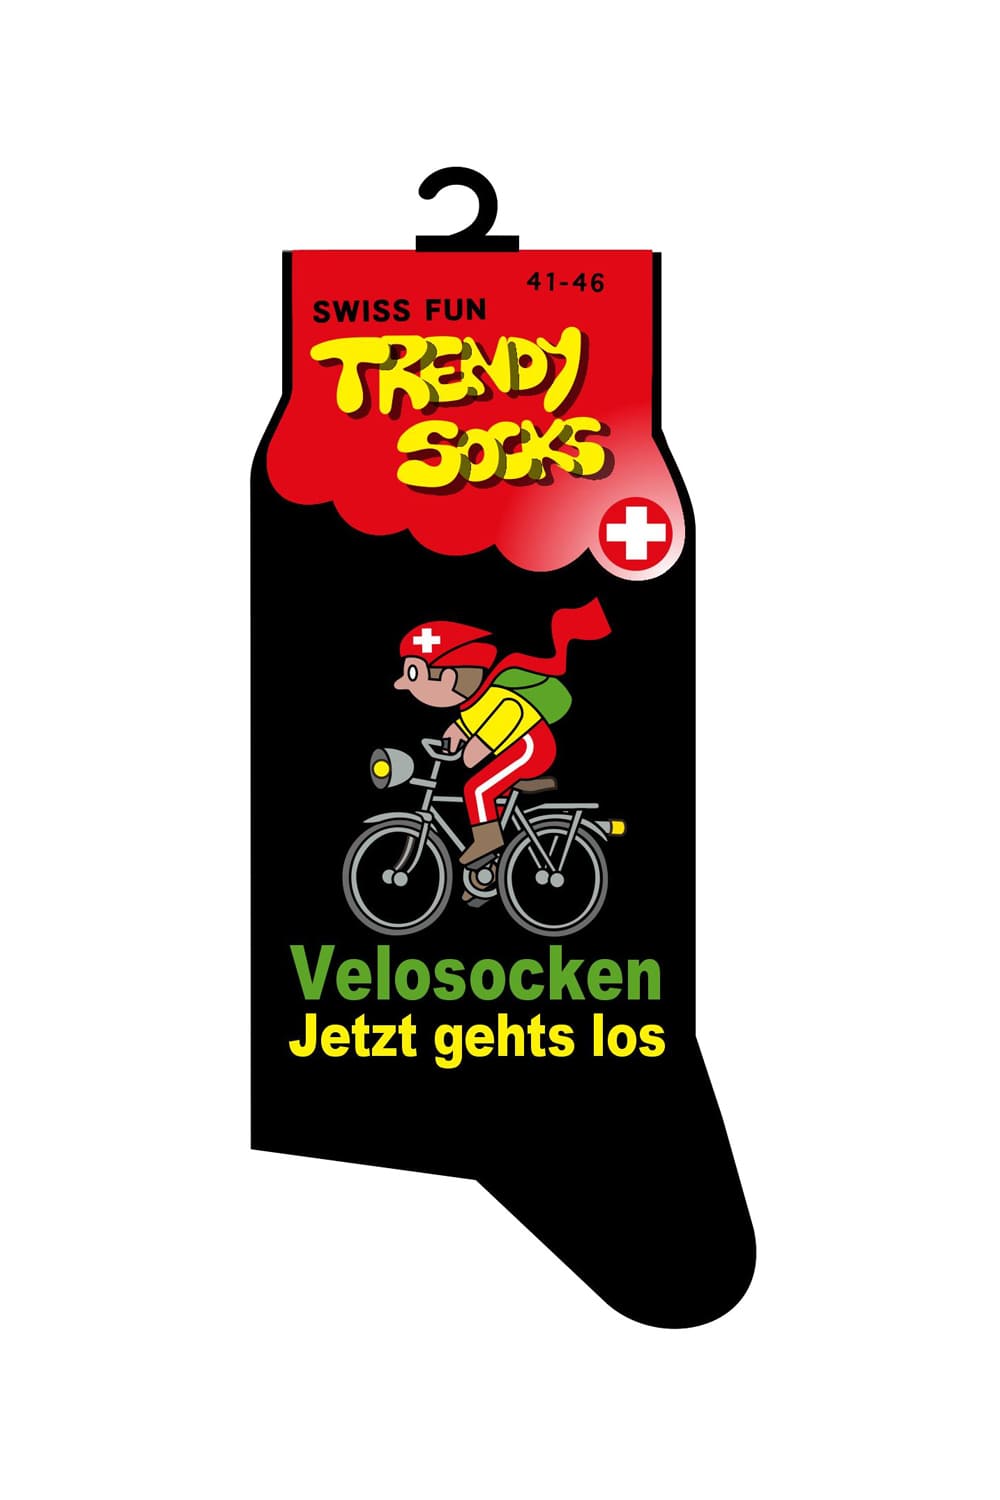 Fahrradfahrer Spasssocken mit dem Spruch: Velosocken jetzt gehts los. Diese witzigen Socken sind einfach ein grossartiges Geschenk für alle, die Spass lieben und verstehen. Diese ultimativen Spruchsocken bieten ein originelles Geschenk für Velofahrer und Fahrrad Fans.